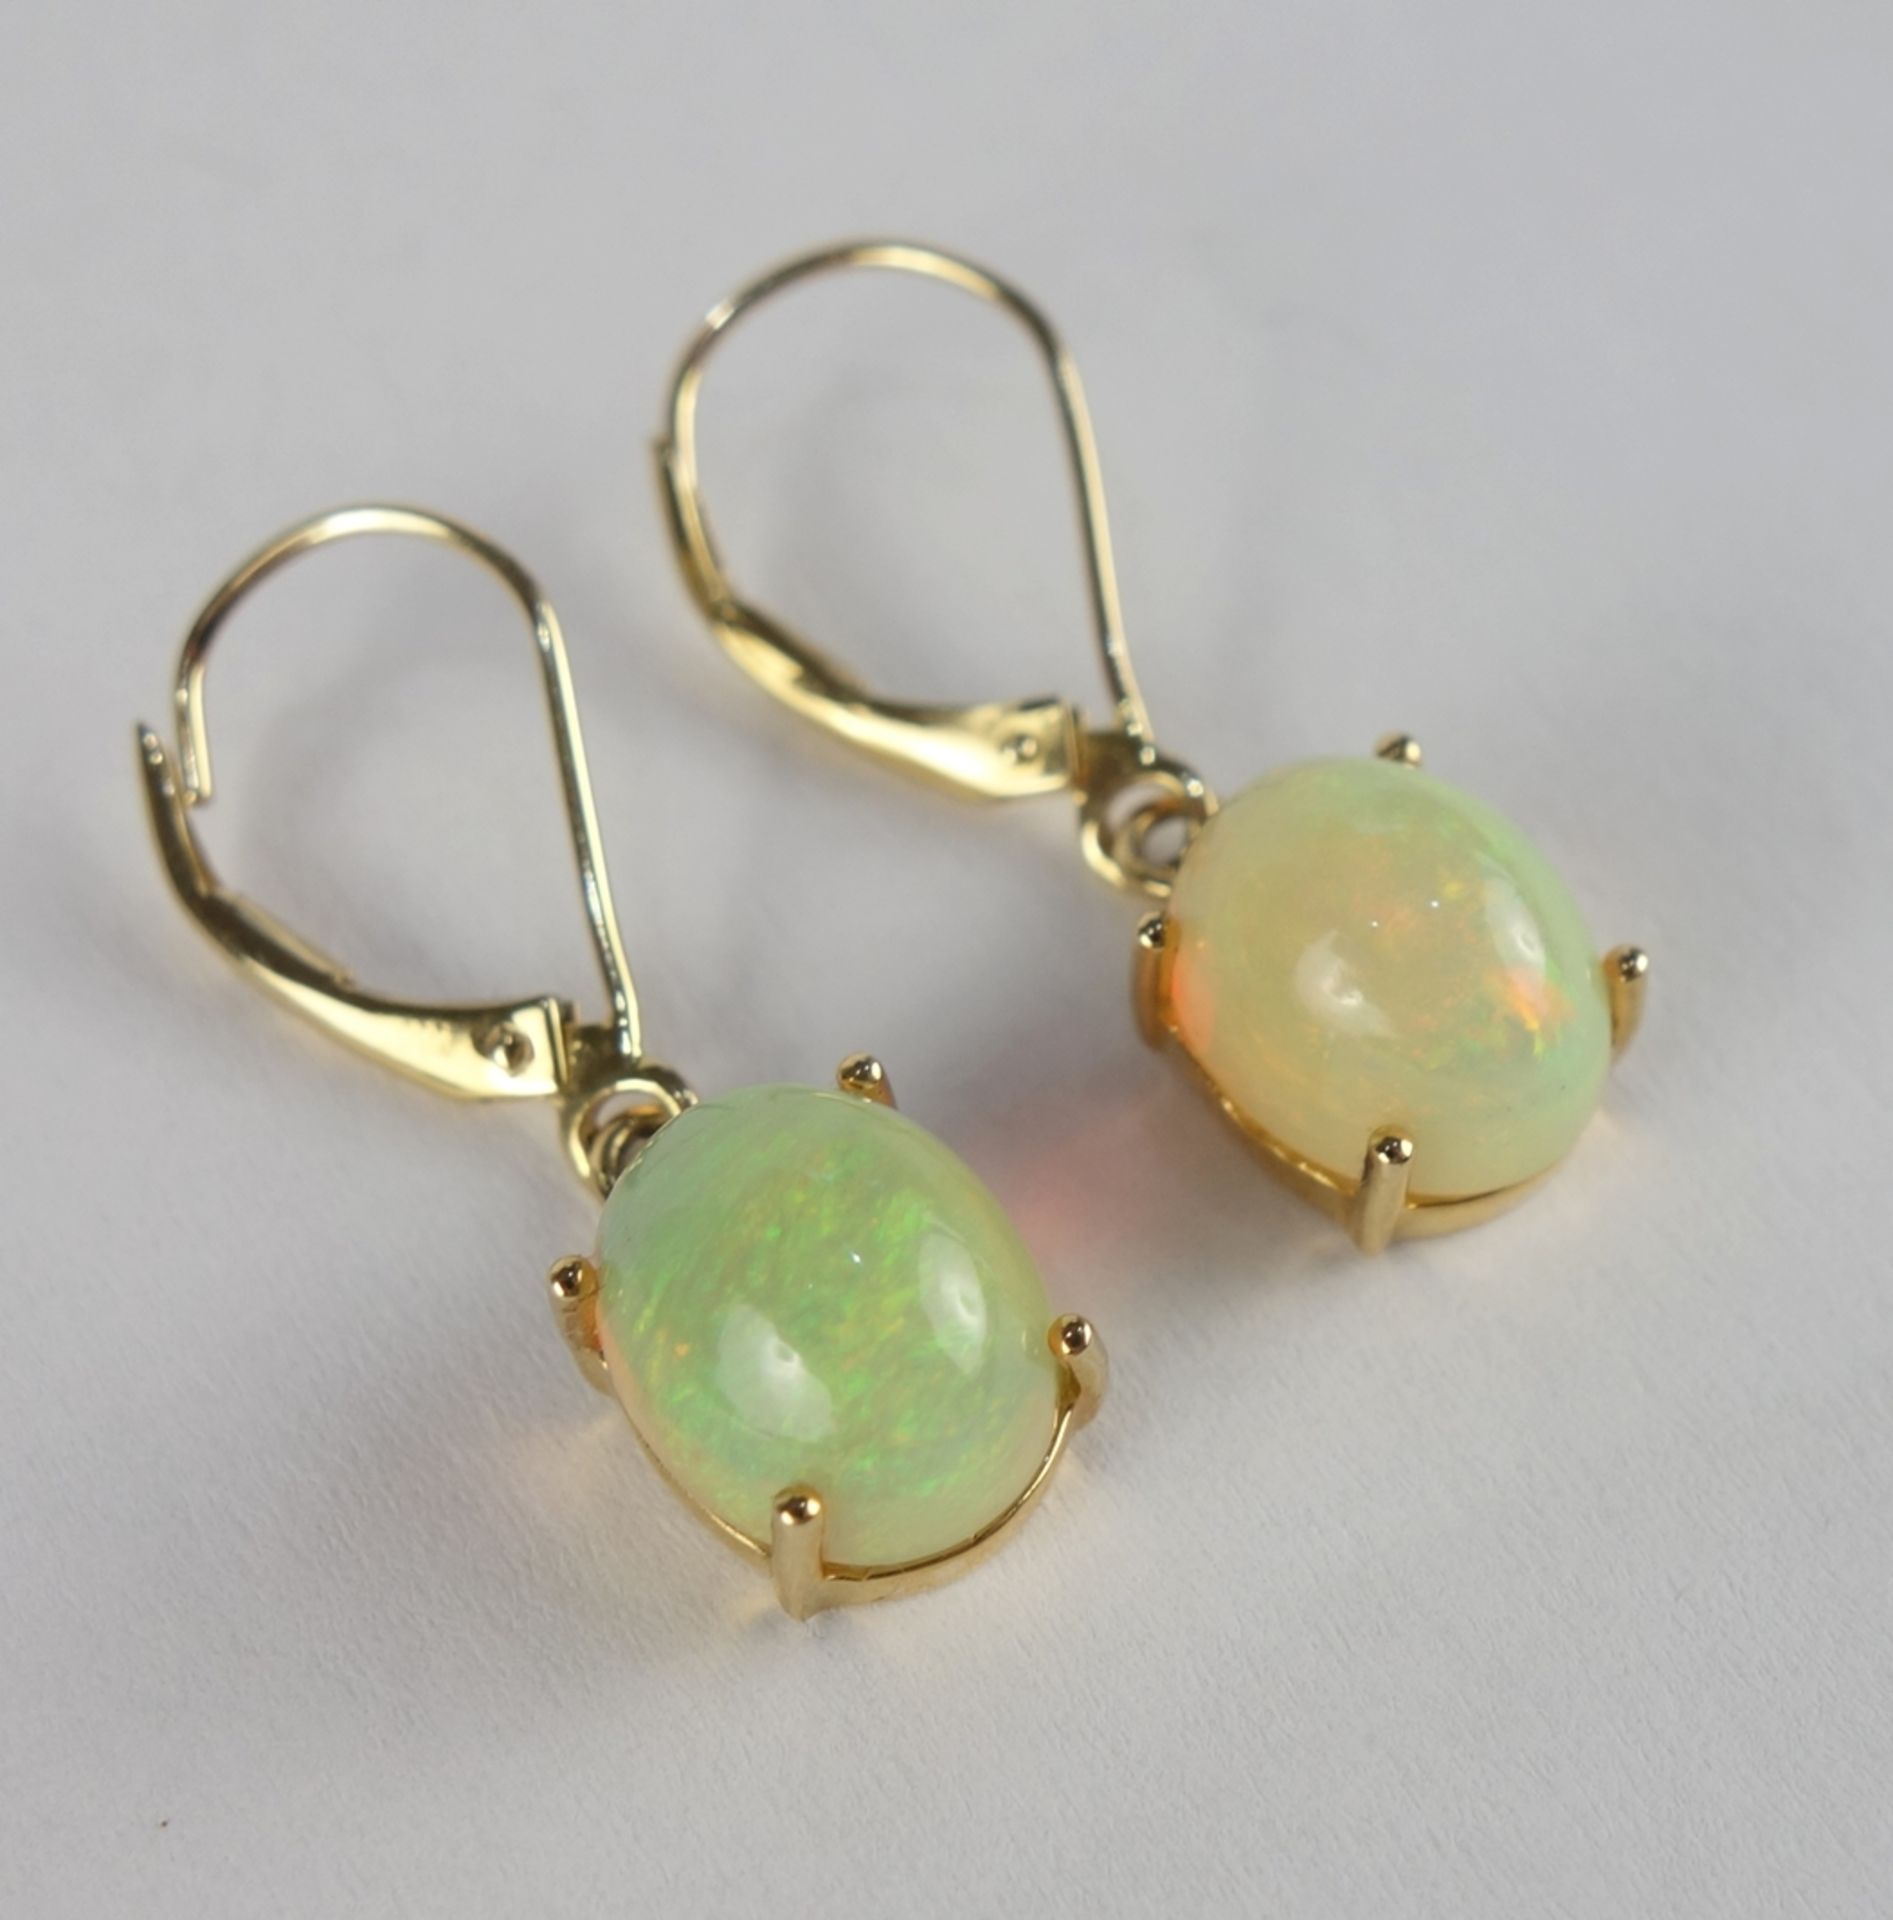 Opal-Anhänger an Kette und Paar Opal-Ohrringe, 585er Gold, Gew.7,01g - Bild 5 aus 5